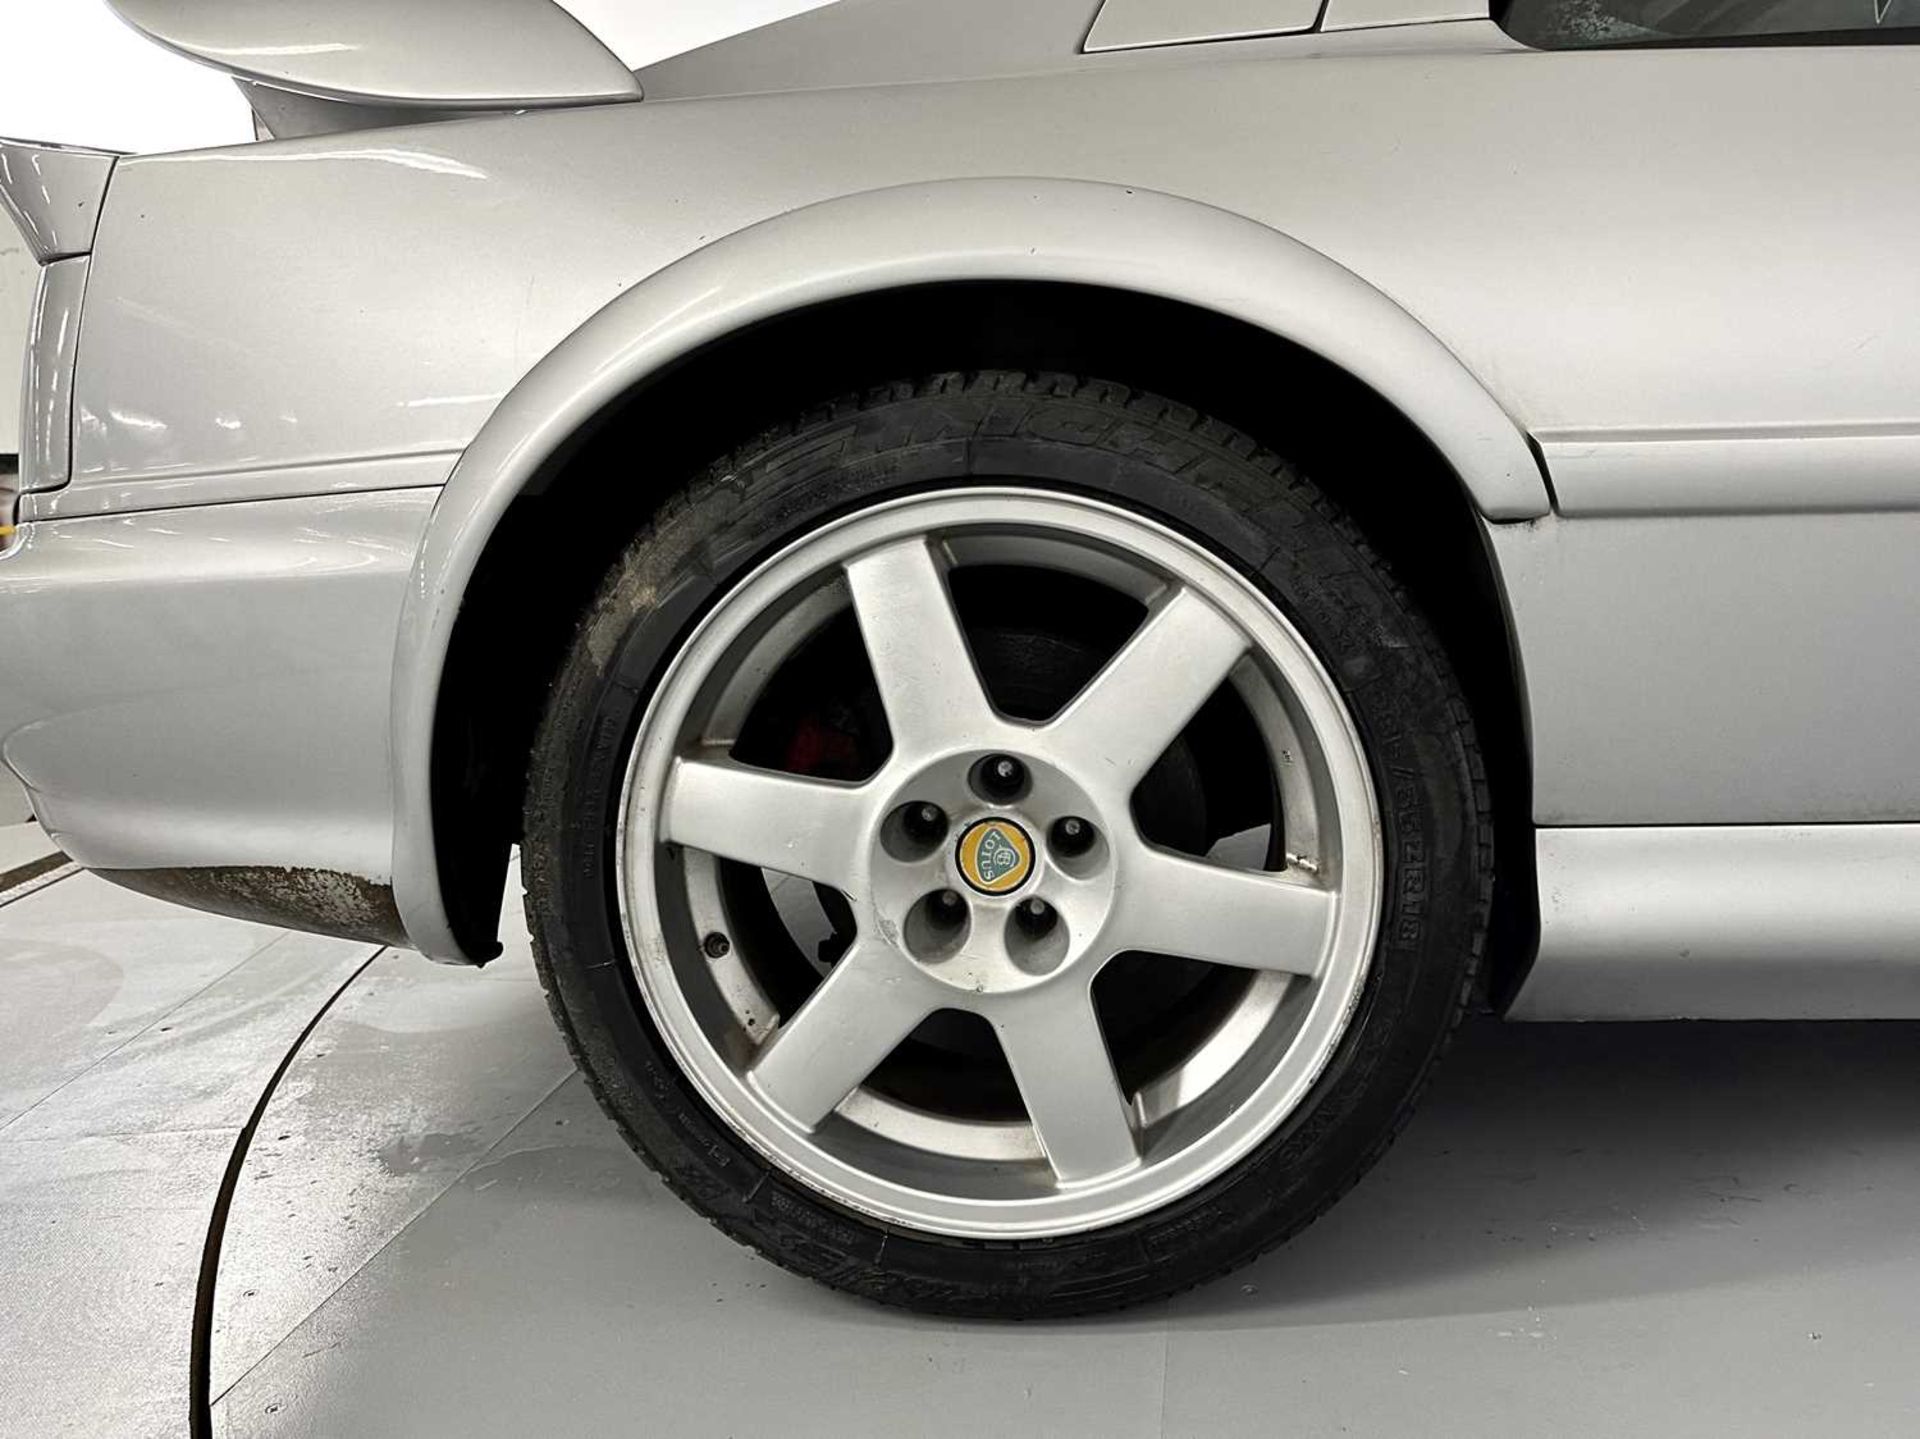 1998 Lotus Esprit V8 GT - Image 15 of 25